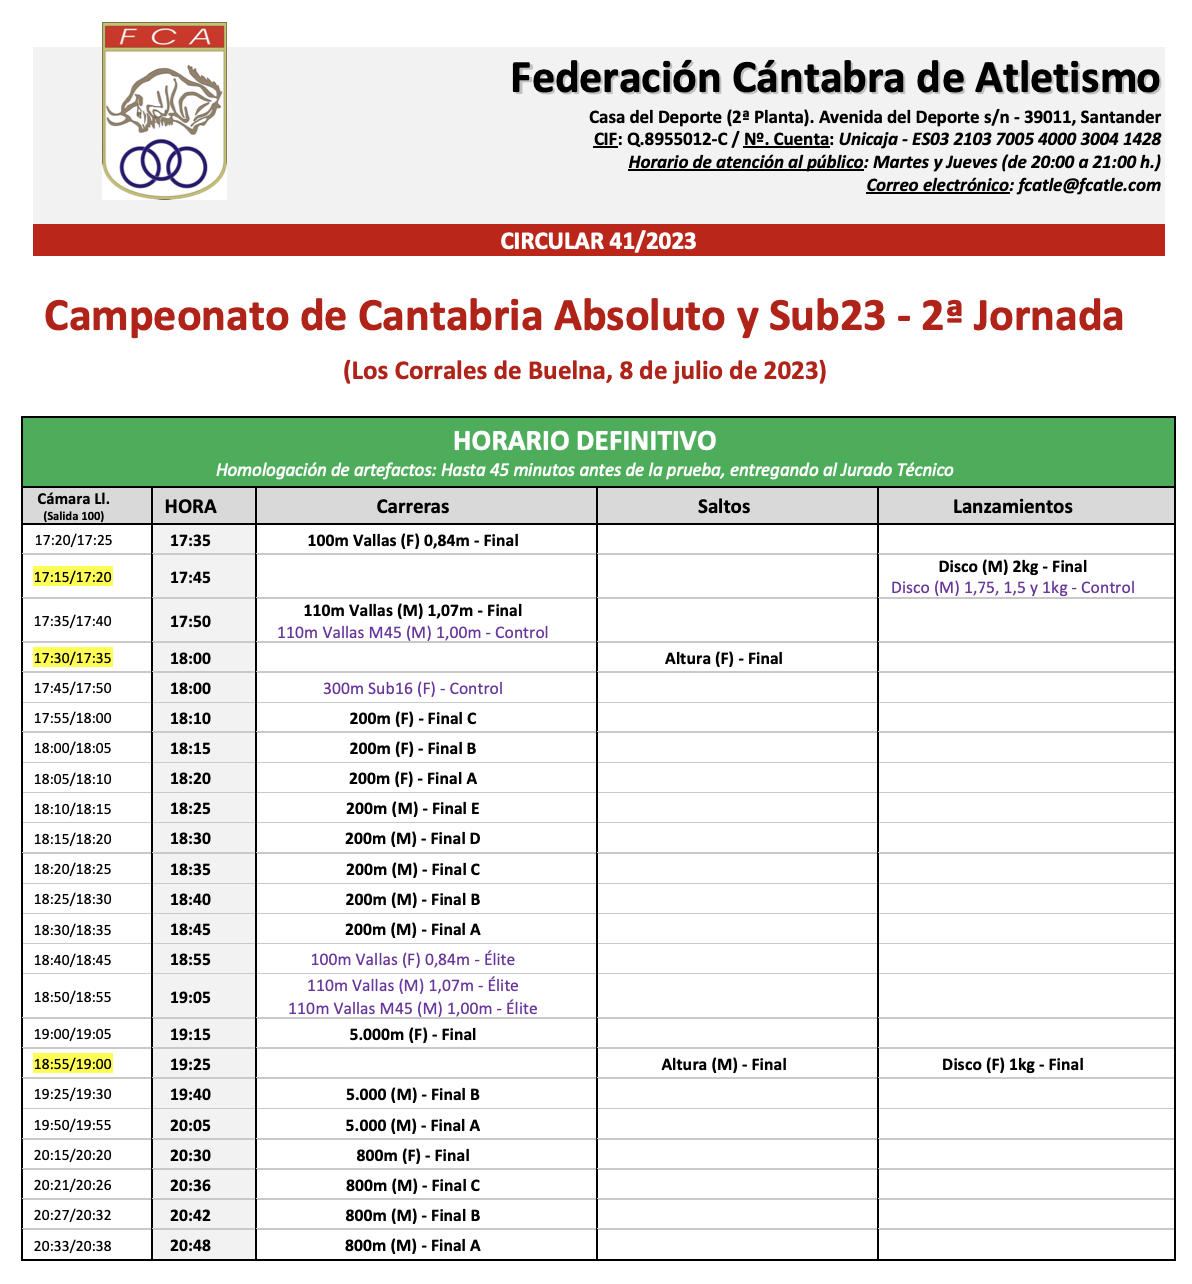 Campeonato de Cantabria Absoluto y Sub23 - 2ª Jornada @ Los Corrales de Buelna, Cantabria.